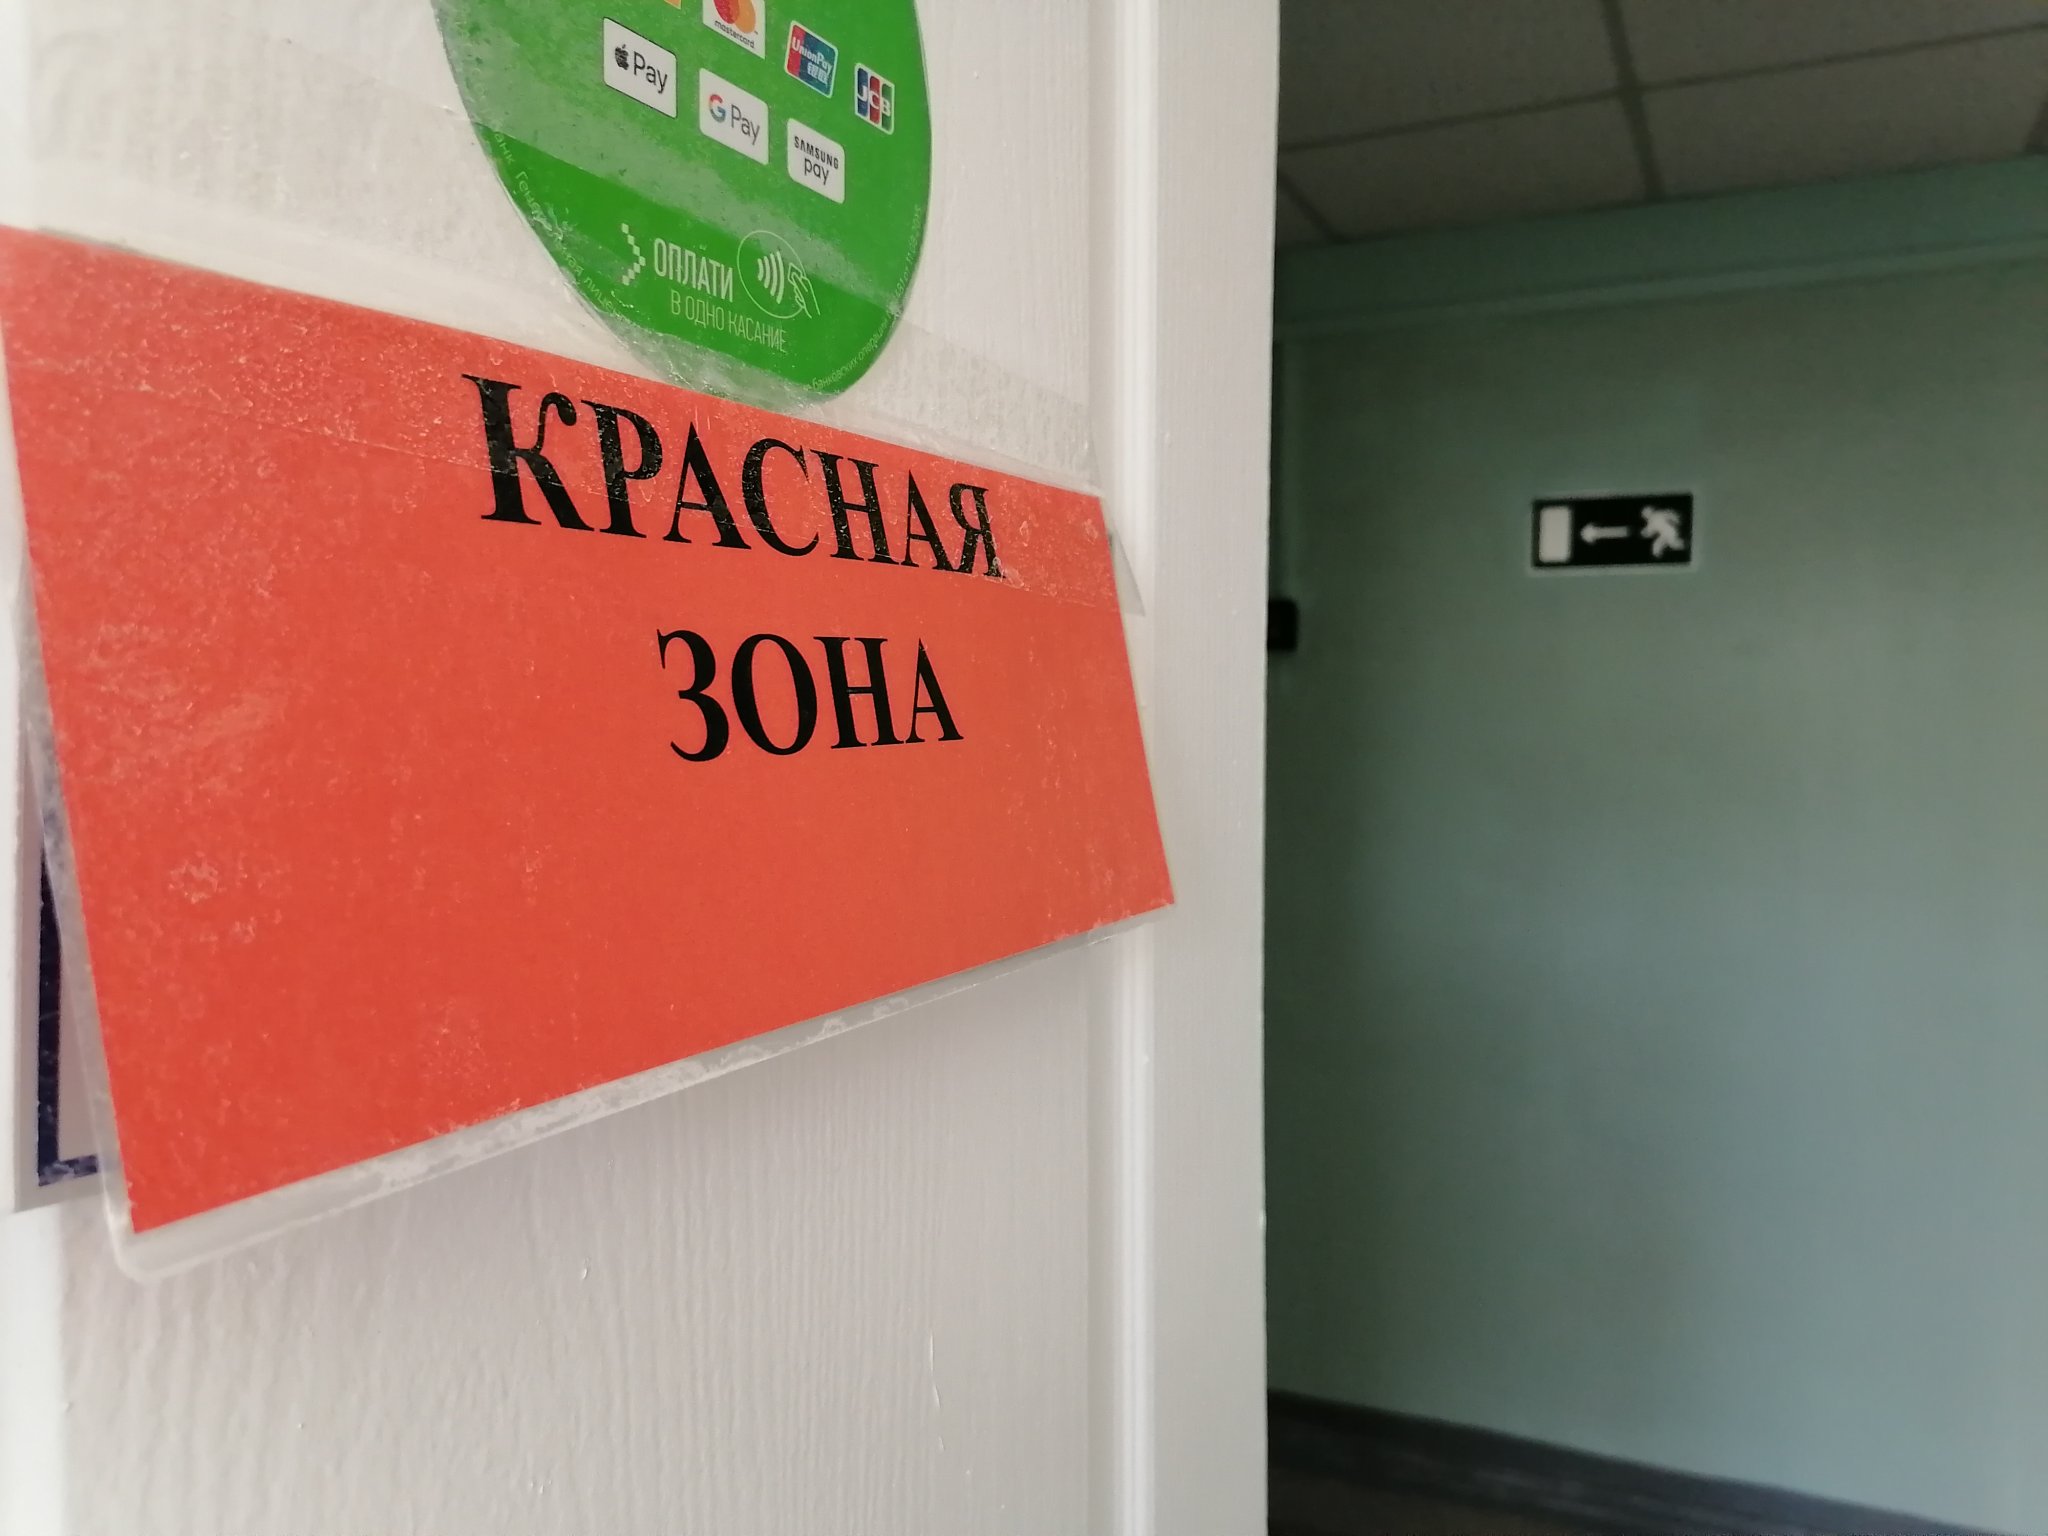 QR-код требуют для проведения плановой операции в больнице Хабаровска